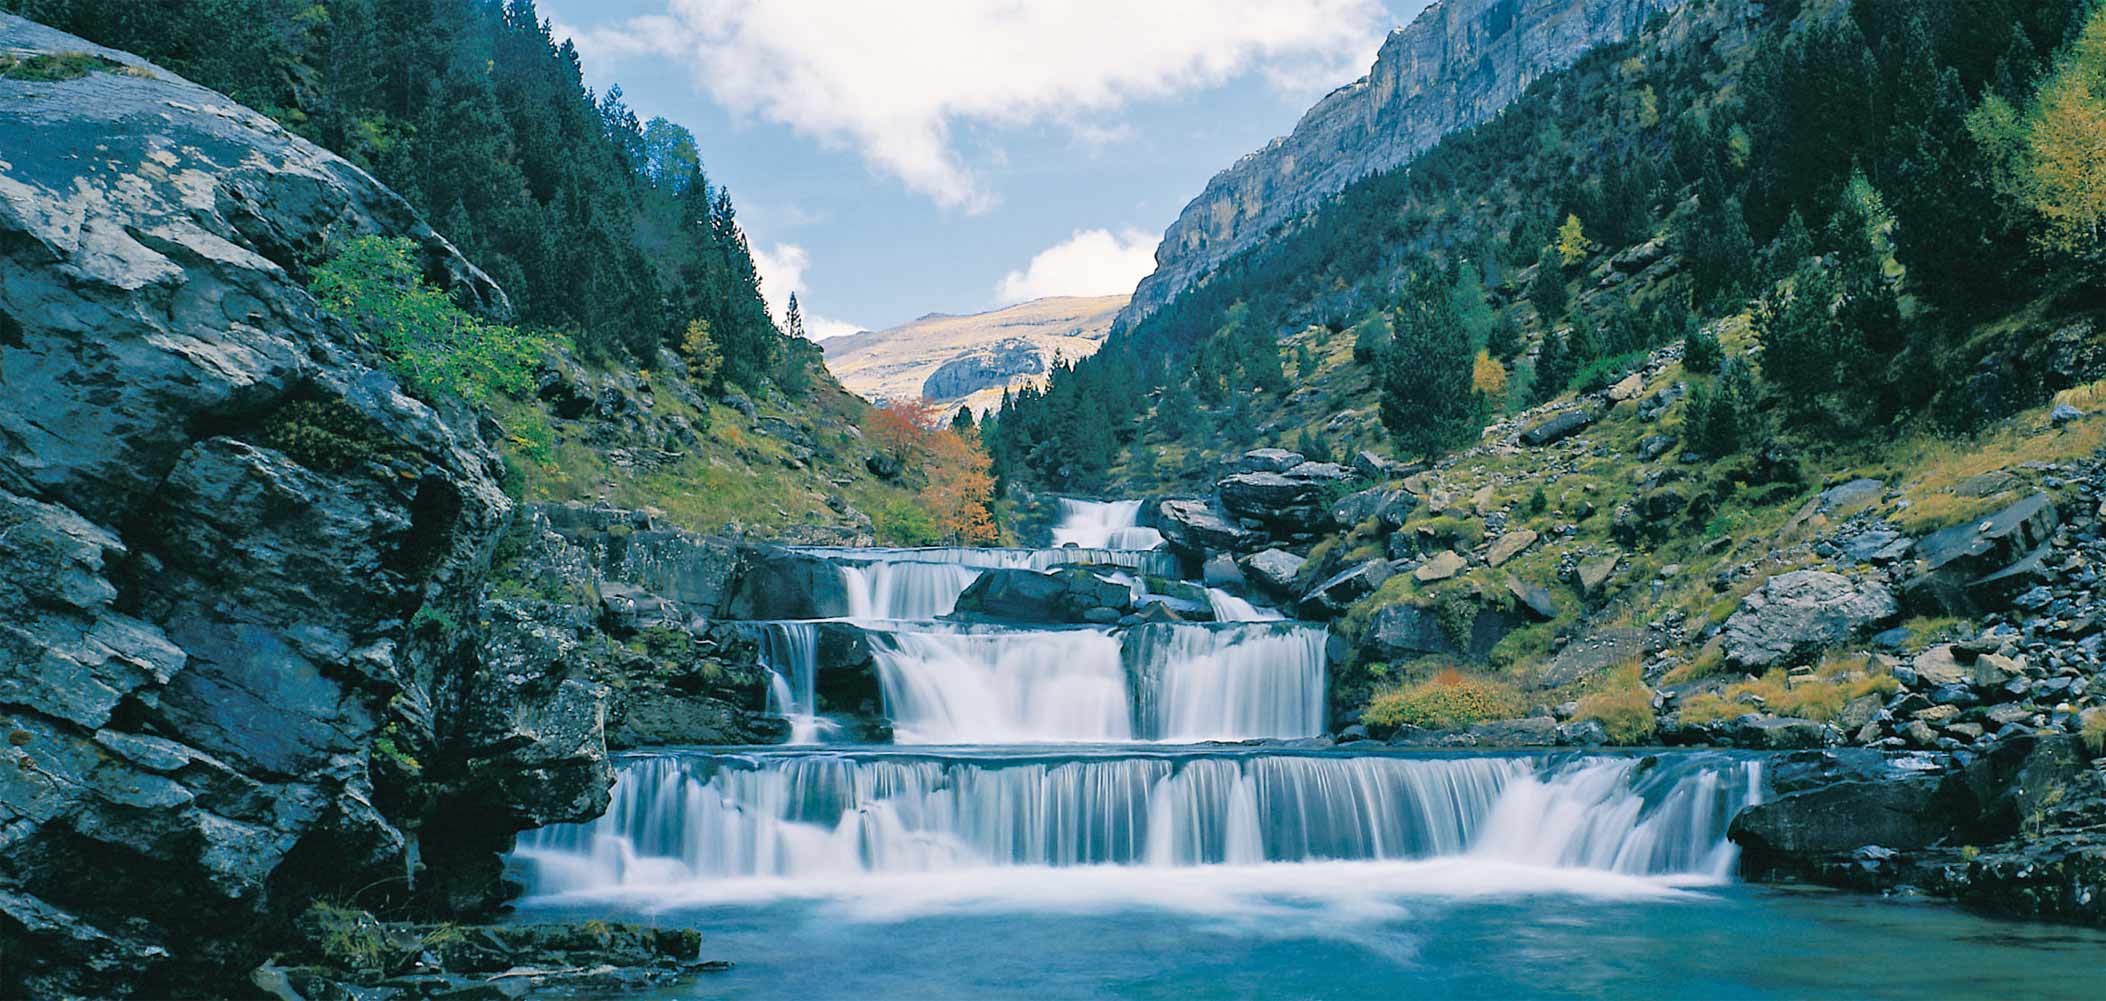 Parque Nacional de Ordesa y Monte Perdido, un espectacular valle glaciar y una de las excursiones más conocidas de los Pirineos